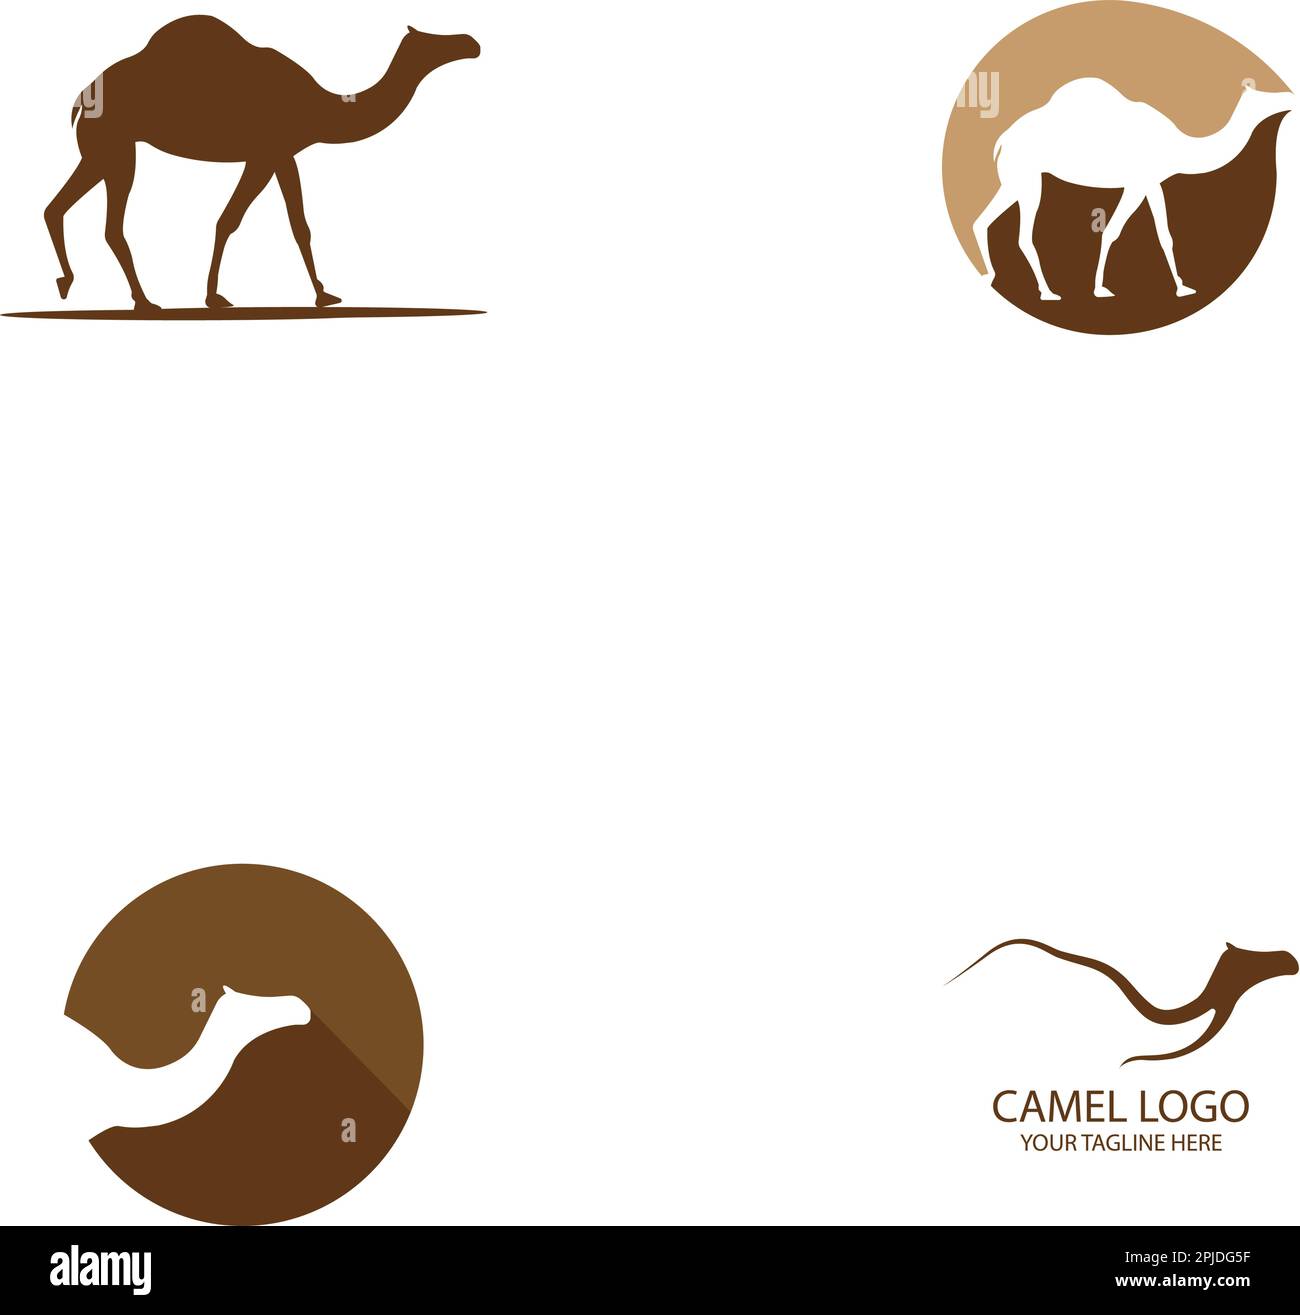 camel logo vector illustration design Stock Vector